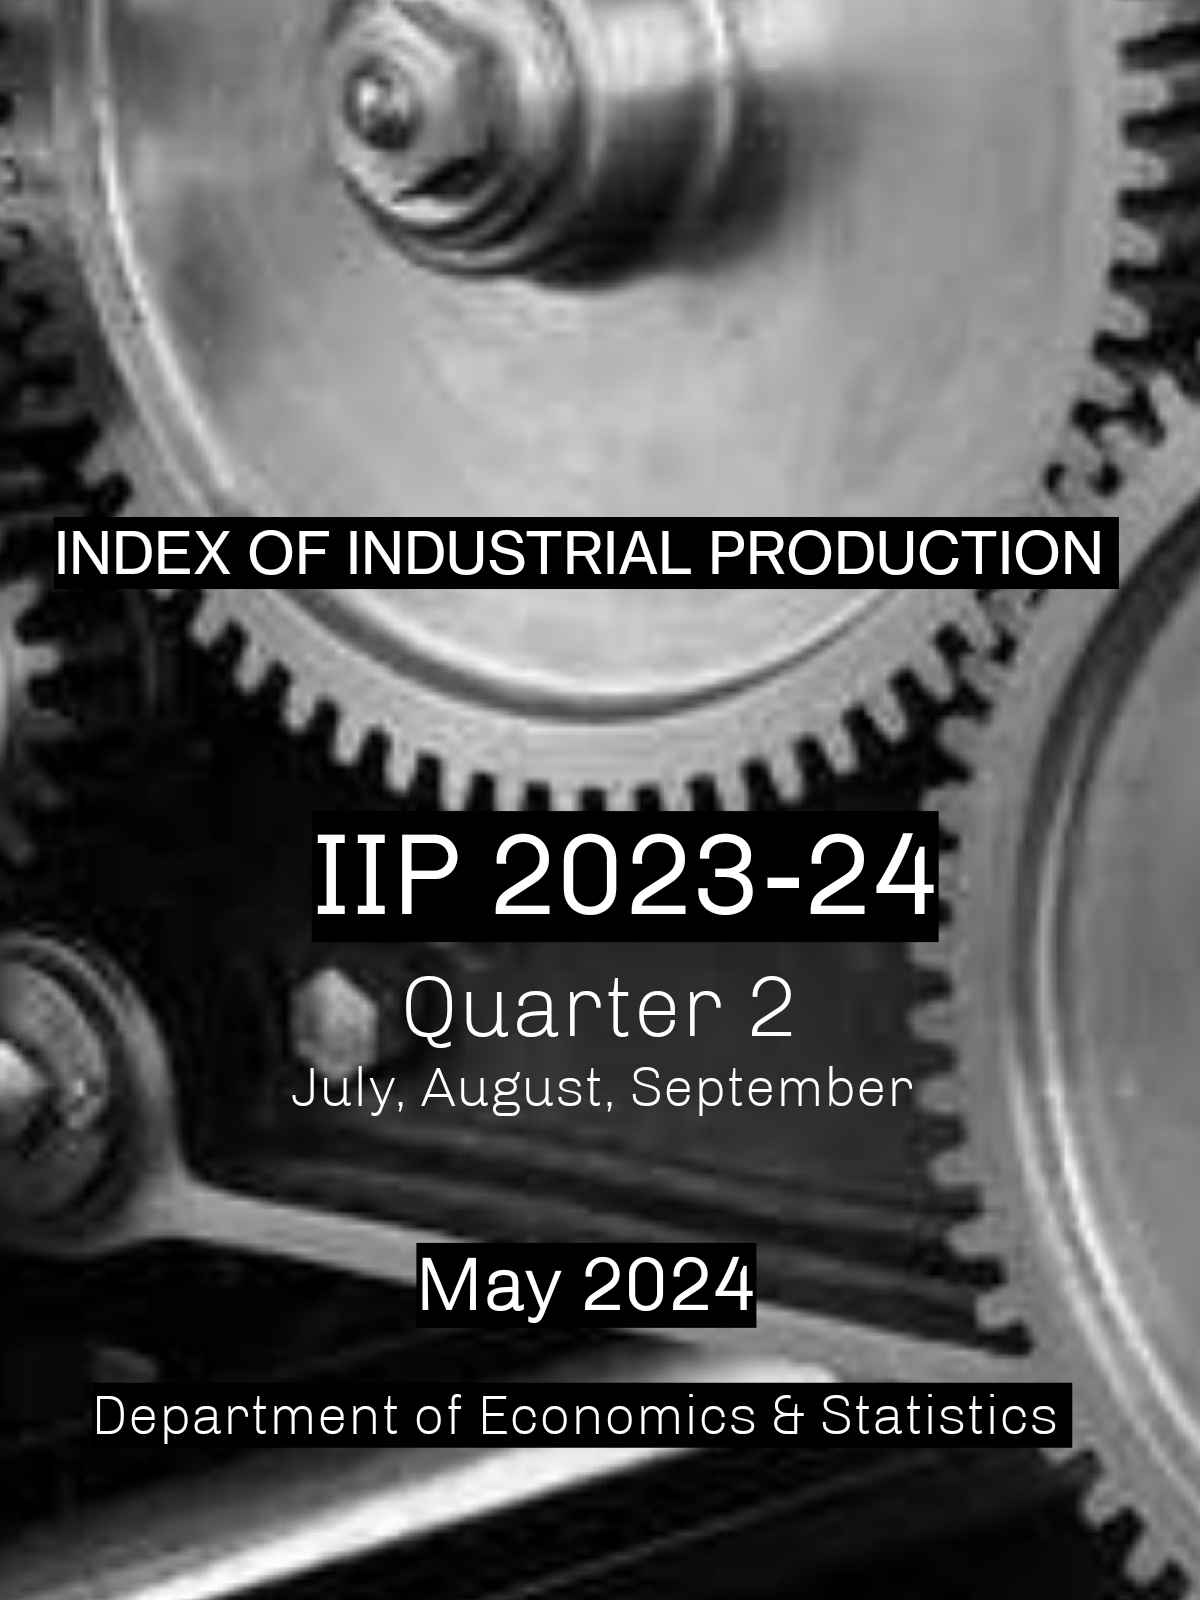 IIP report Quarter 2 2023-24